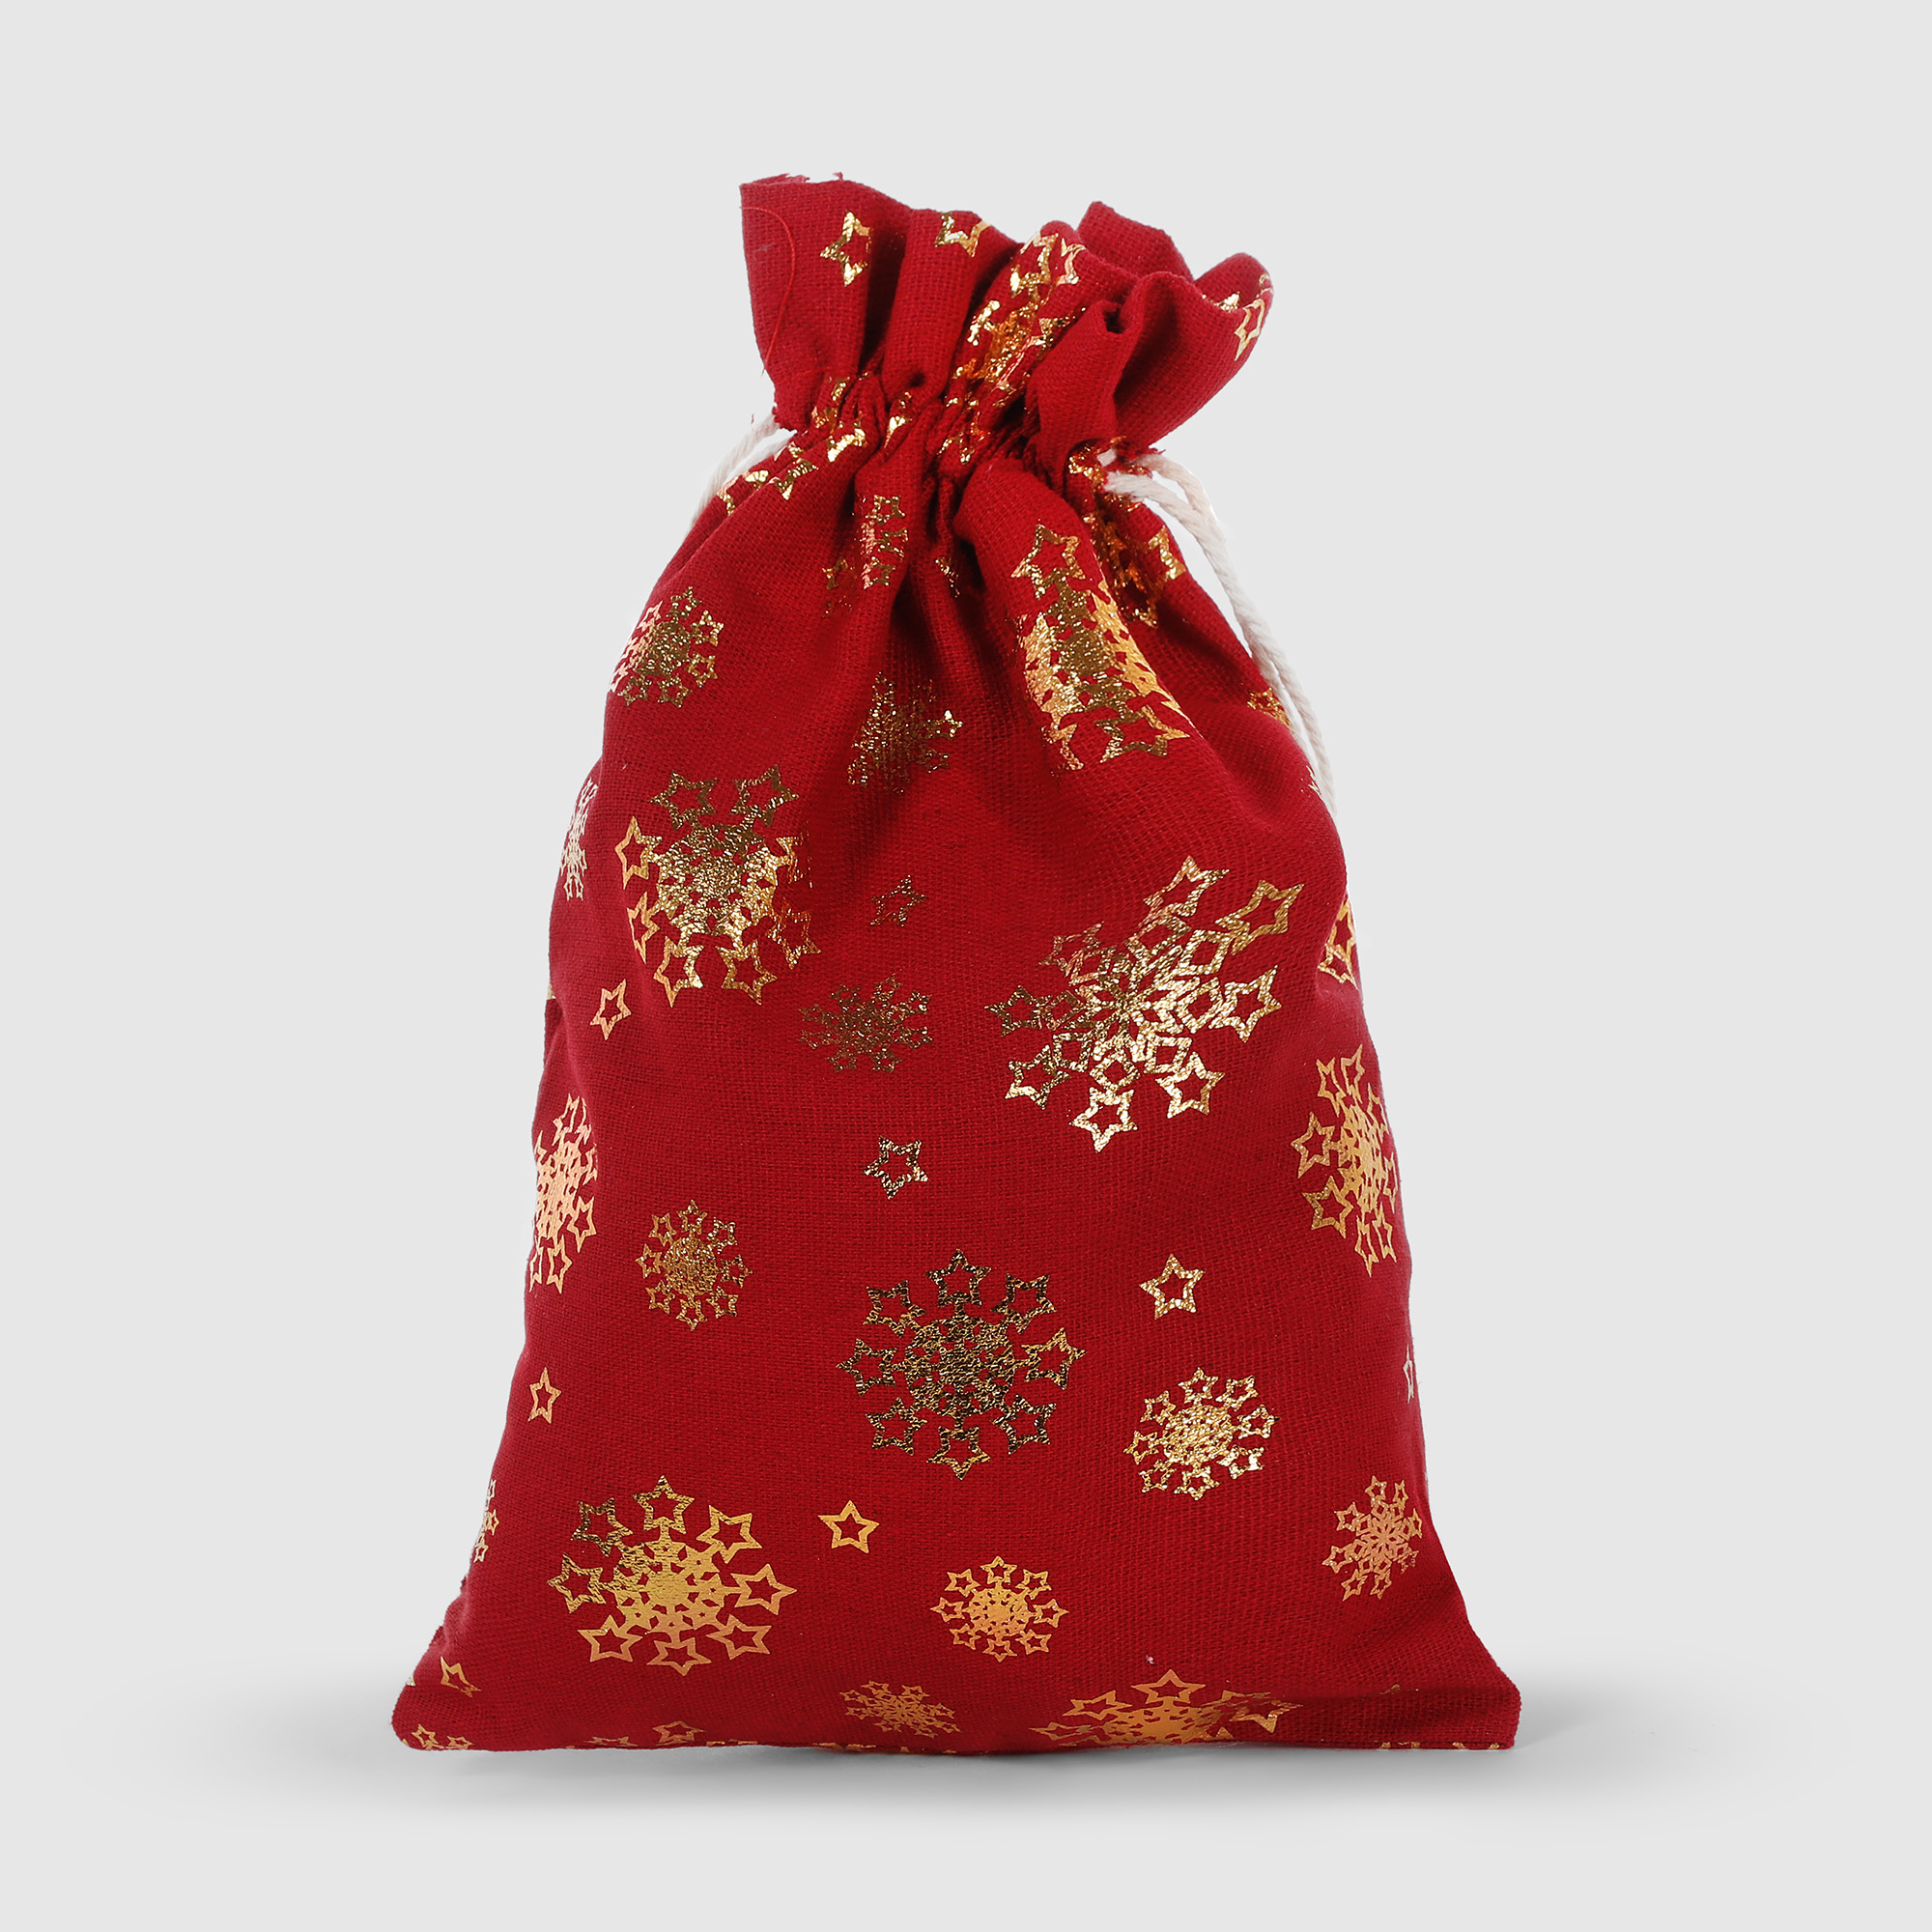 Мешок подарочный Mercury NY красный 20x30 см в ассортименте мешок для утилизации живой ёлки или хранения искусственной кзнм lm15444309